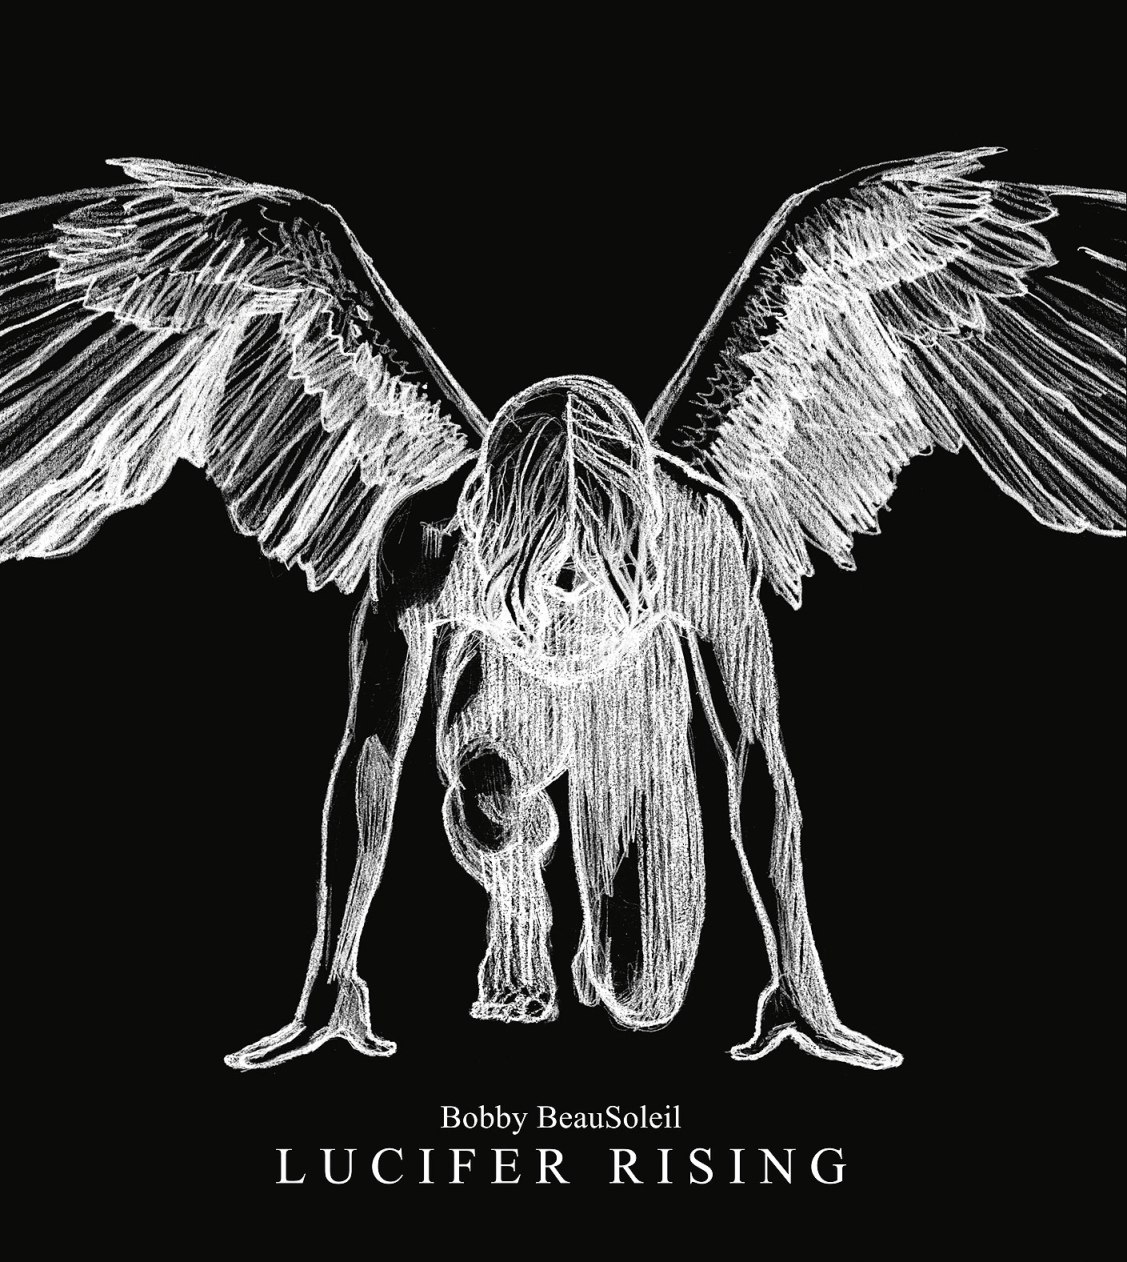 East News. Новая обложка саундтрека Lucifer Rising, выполненная российским арт-коллективом Doping-Pon